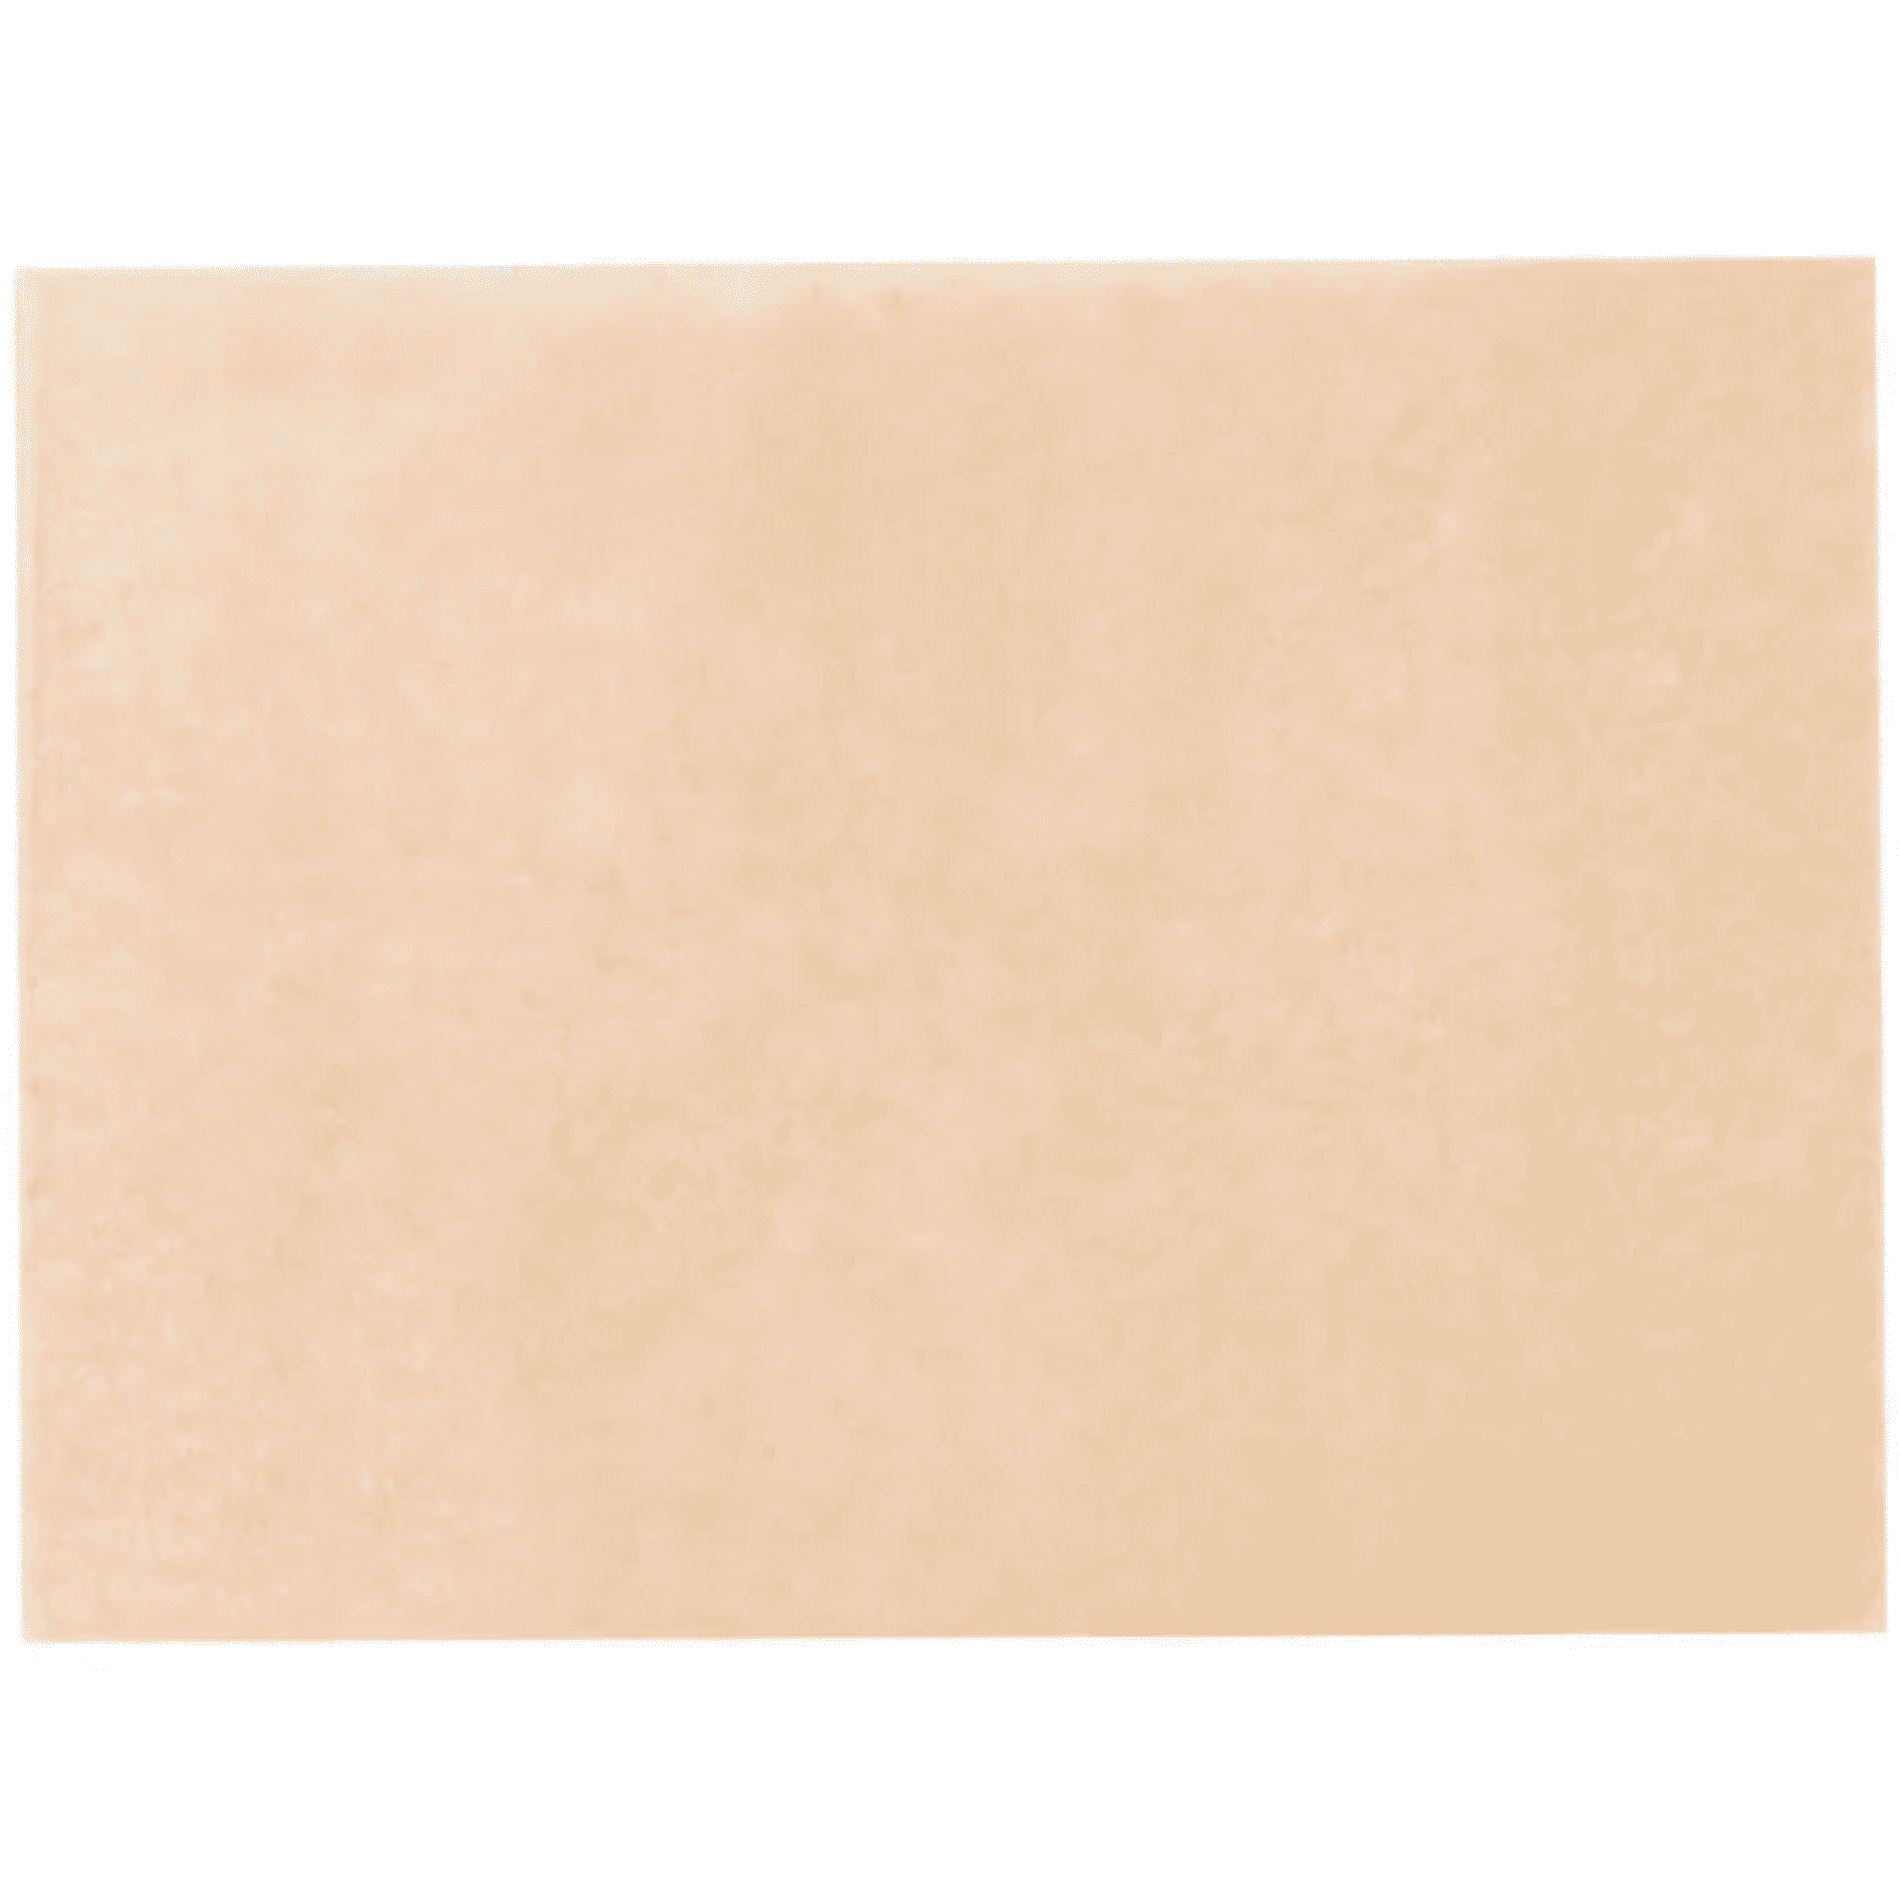 Quilon-Coated Parchment Paper - 12 x 16 Half Sheet - White